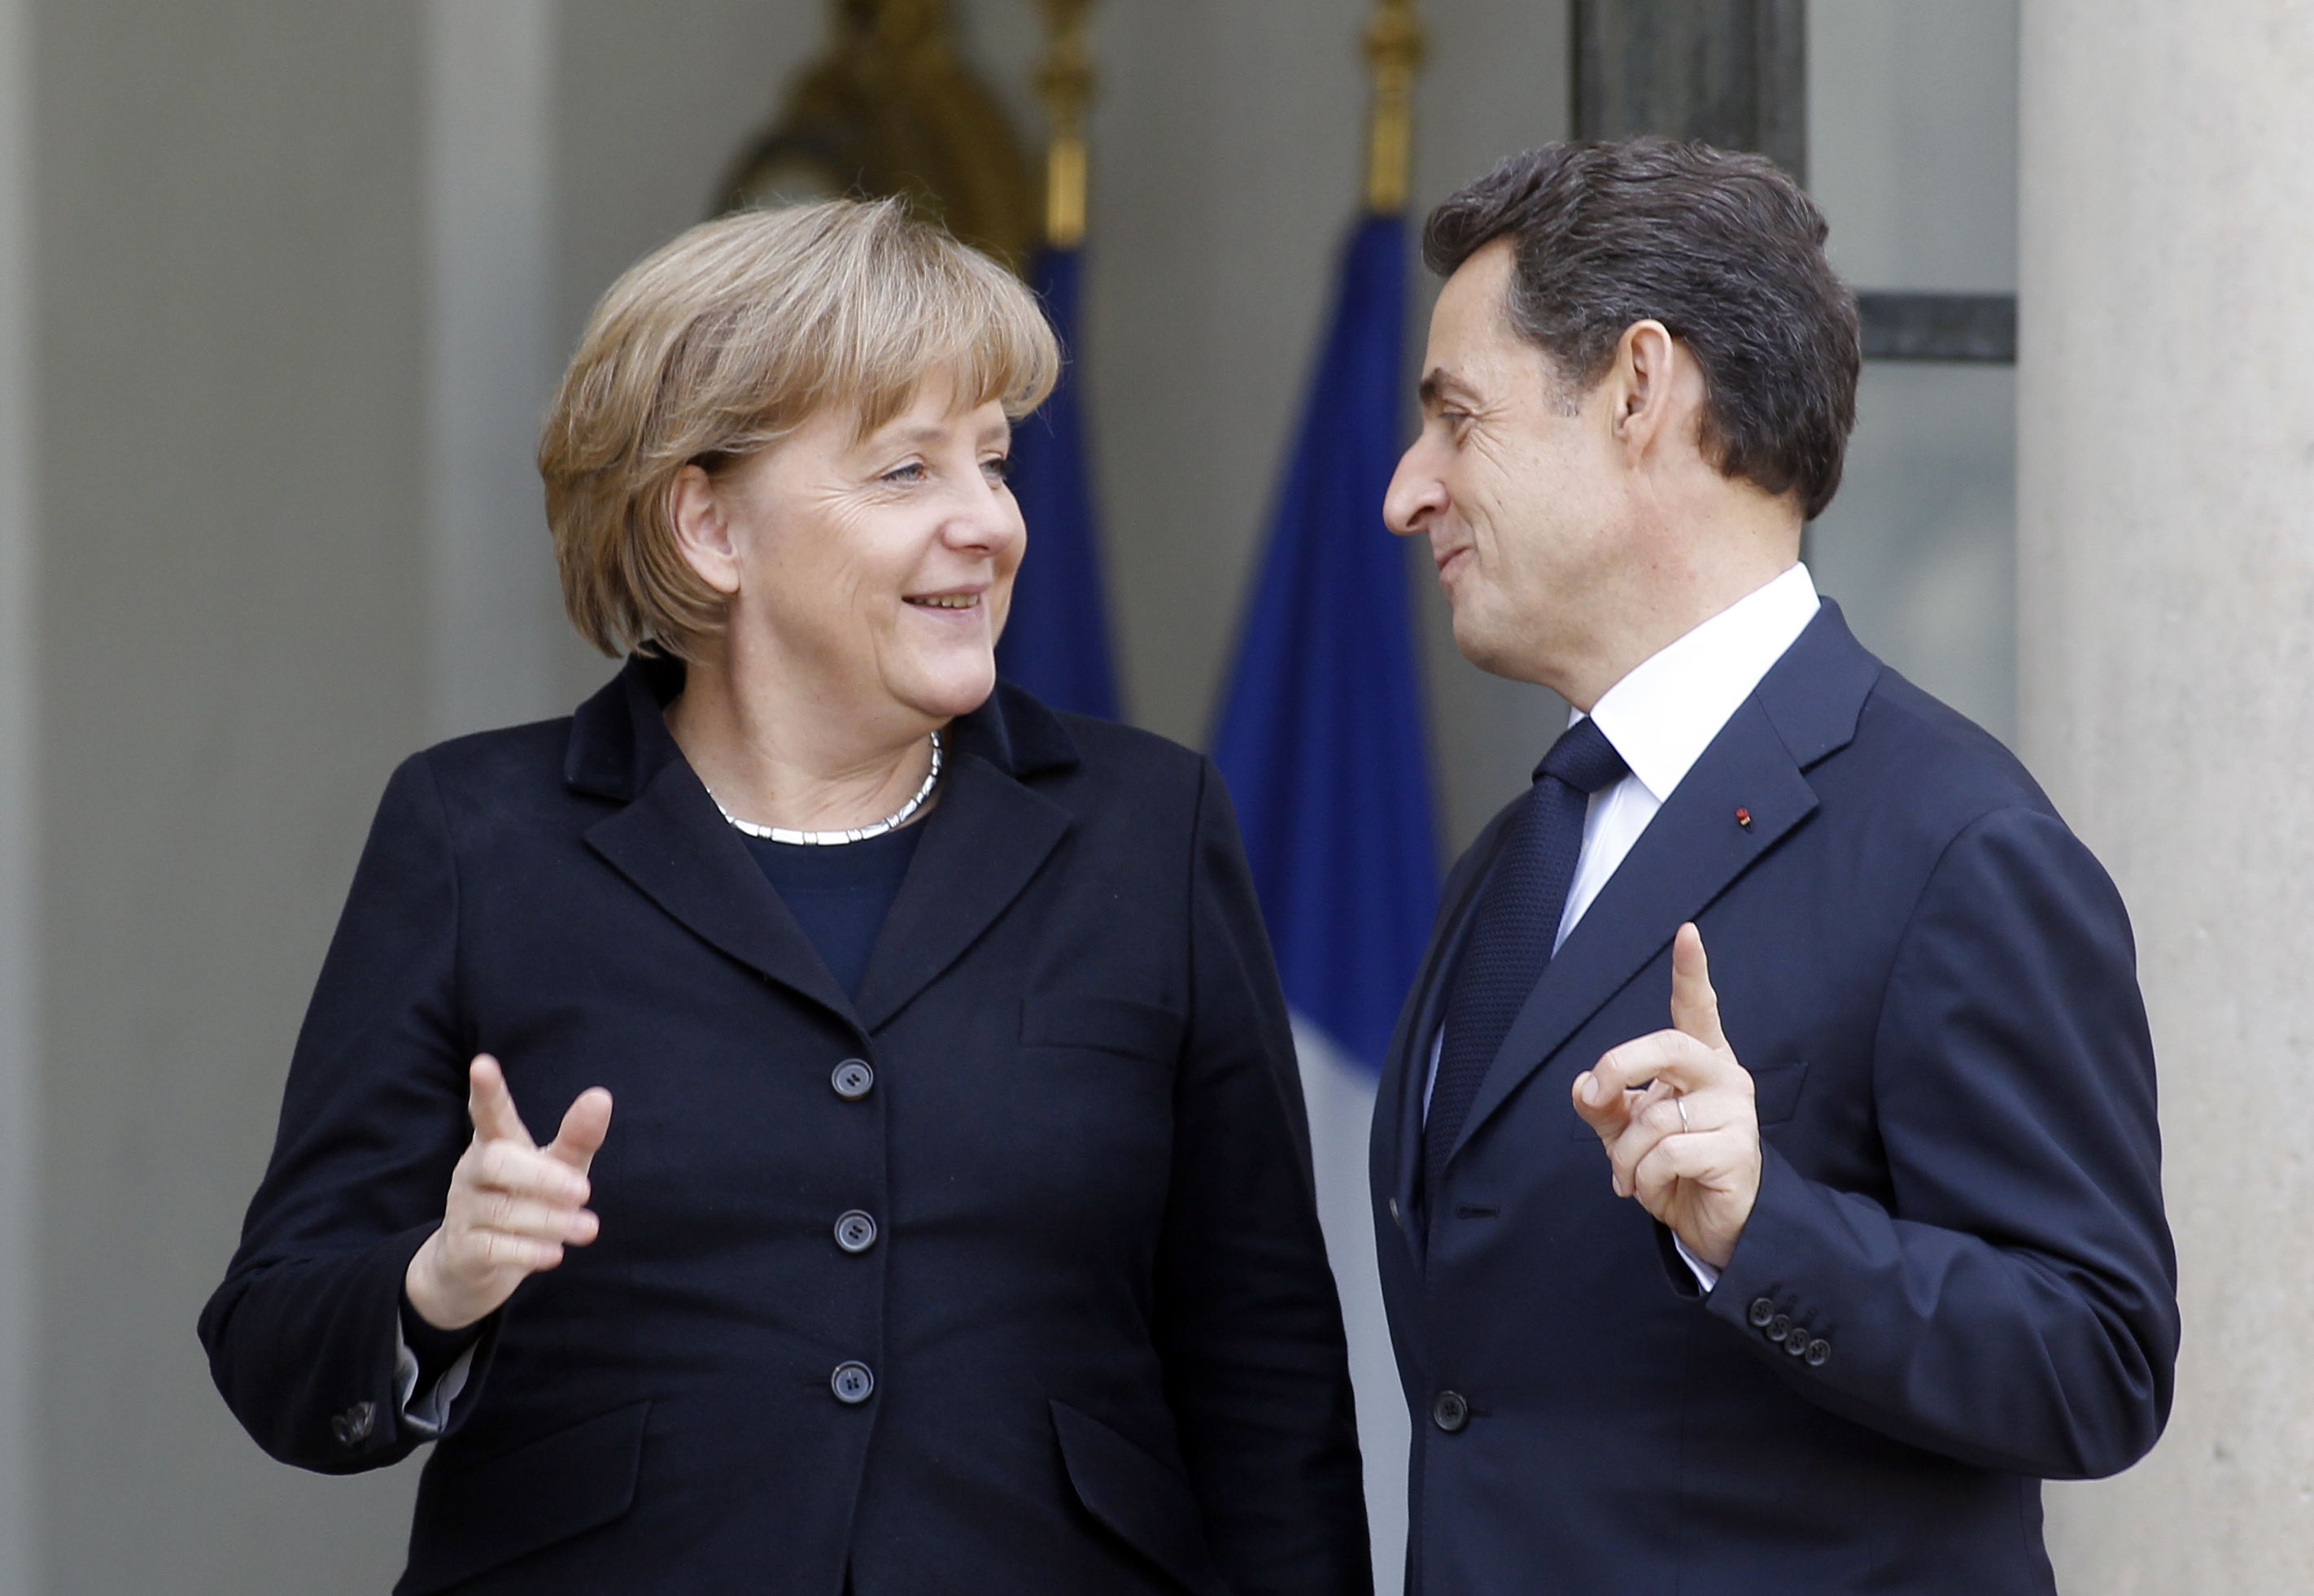 Μέρκελ – Σαρκοζί: νέα ευρωπαϊκή συνθήκη με την αρχή της πλειοψηφίας